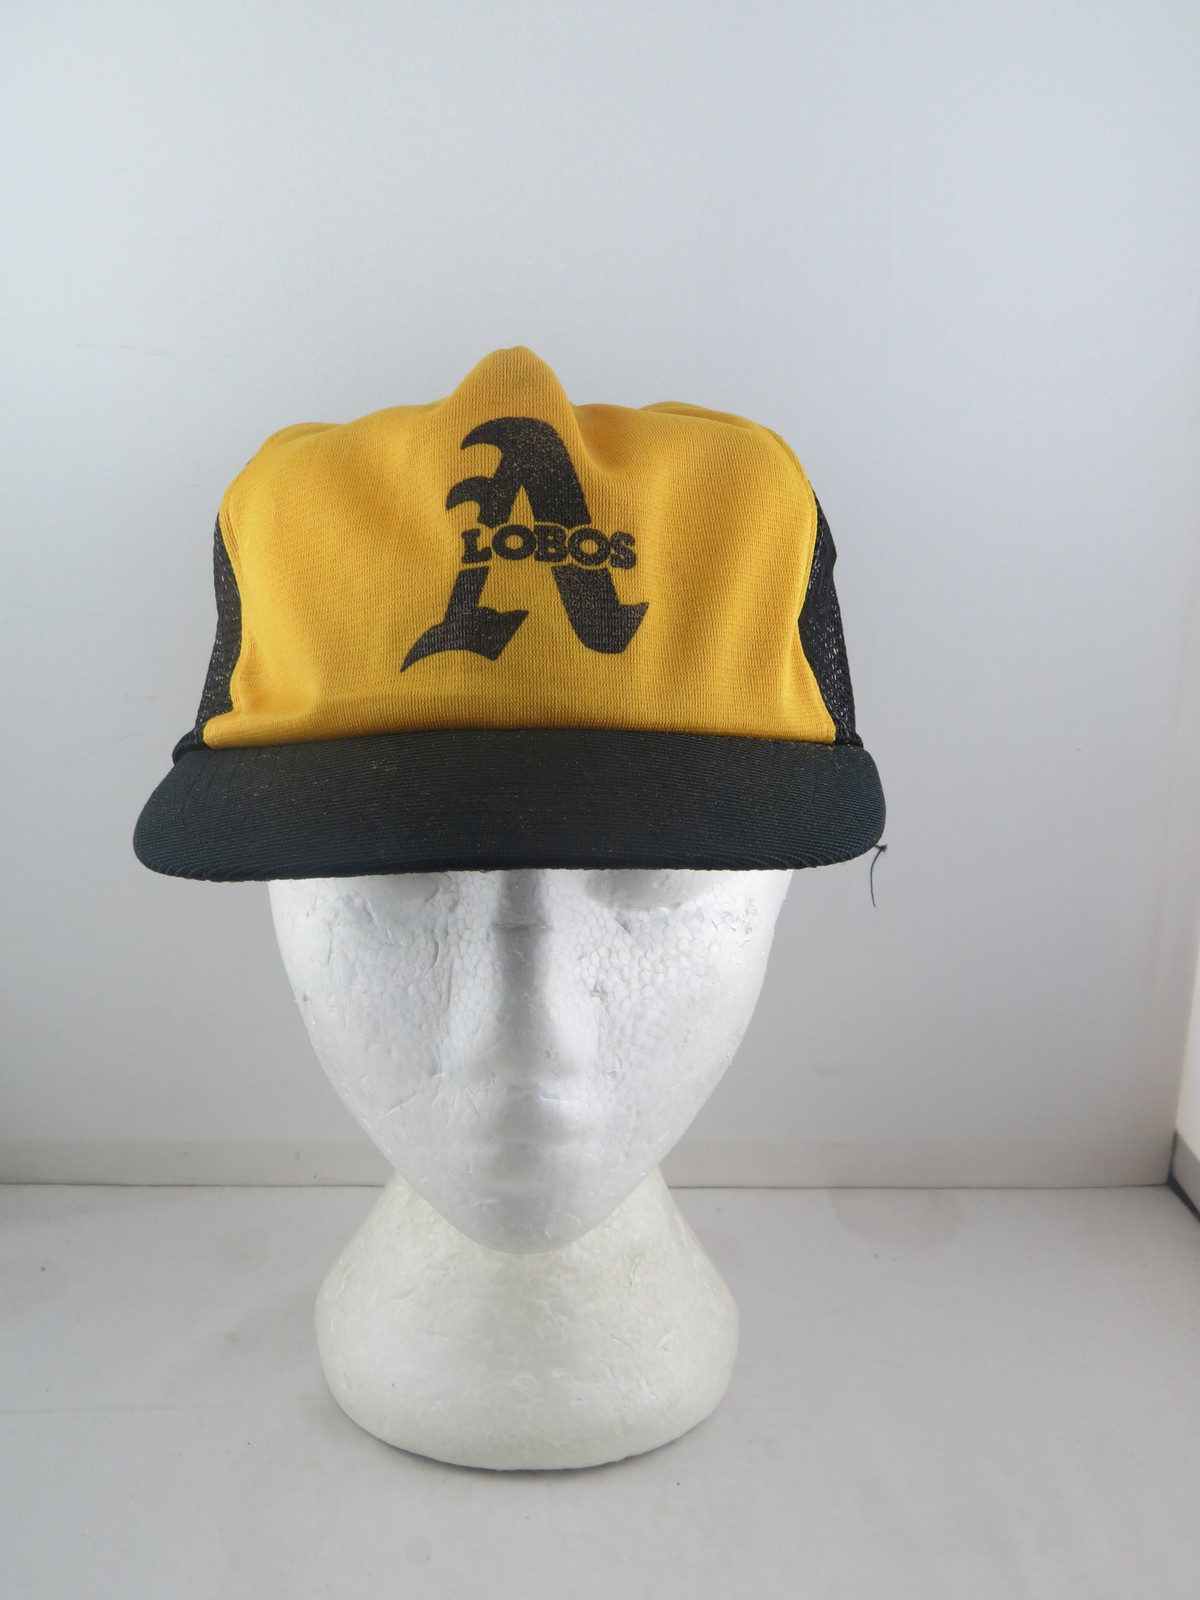 Vintage Annco Los Angeles Dodgers Snapback Hat MLB – Team Sold Out Vintage